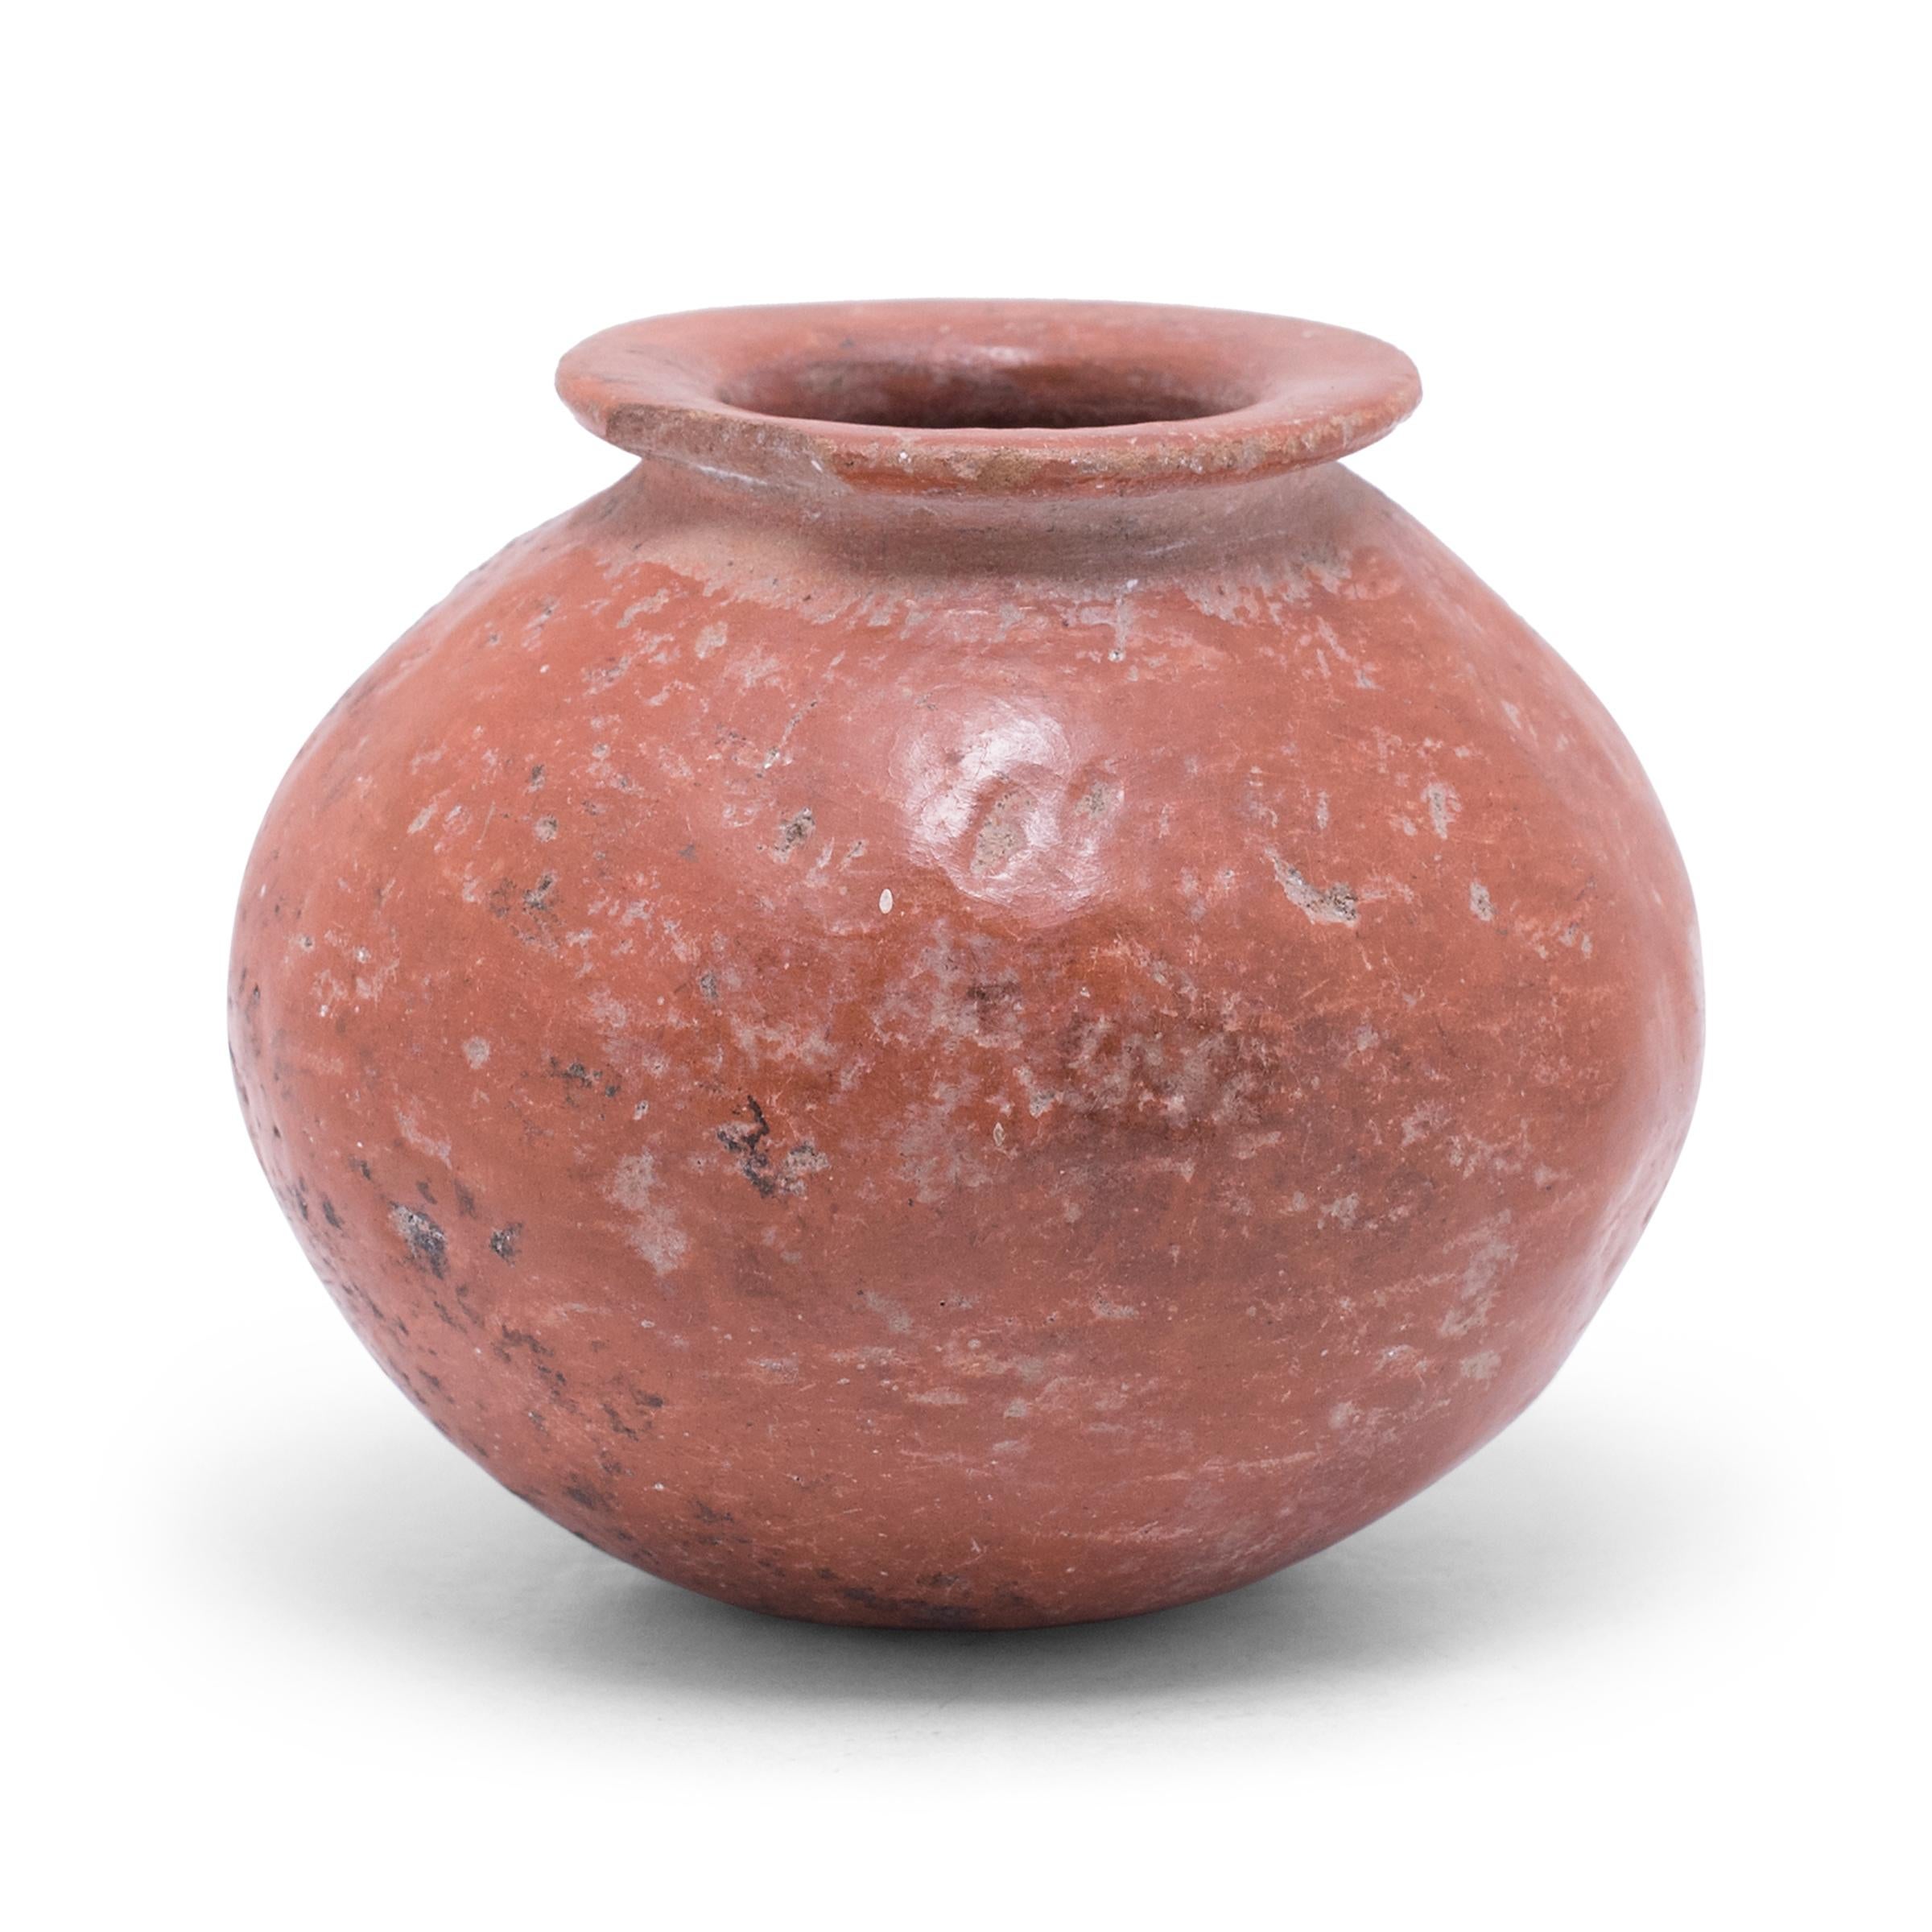 Dieses zierliche Olla-Gefäß aus roter Ware weist eine reiche Patina und ein wunderschönes unregelmäßiges Muster von Abnutzungserscheinungen auf und zeigt viele verräterische Anzeichen präkolumbischer Keramik. Das Gefäß hat eine kugelförmige Gestalt